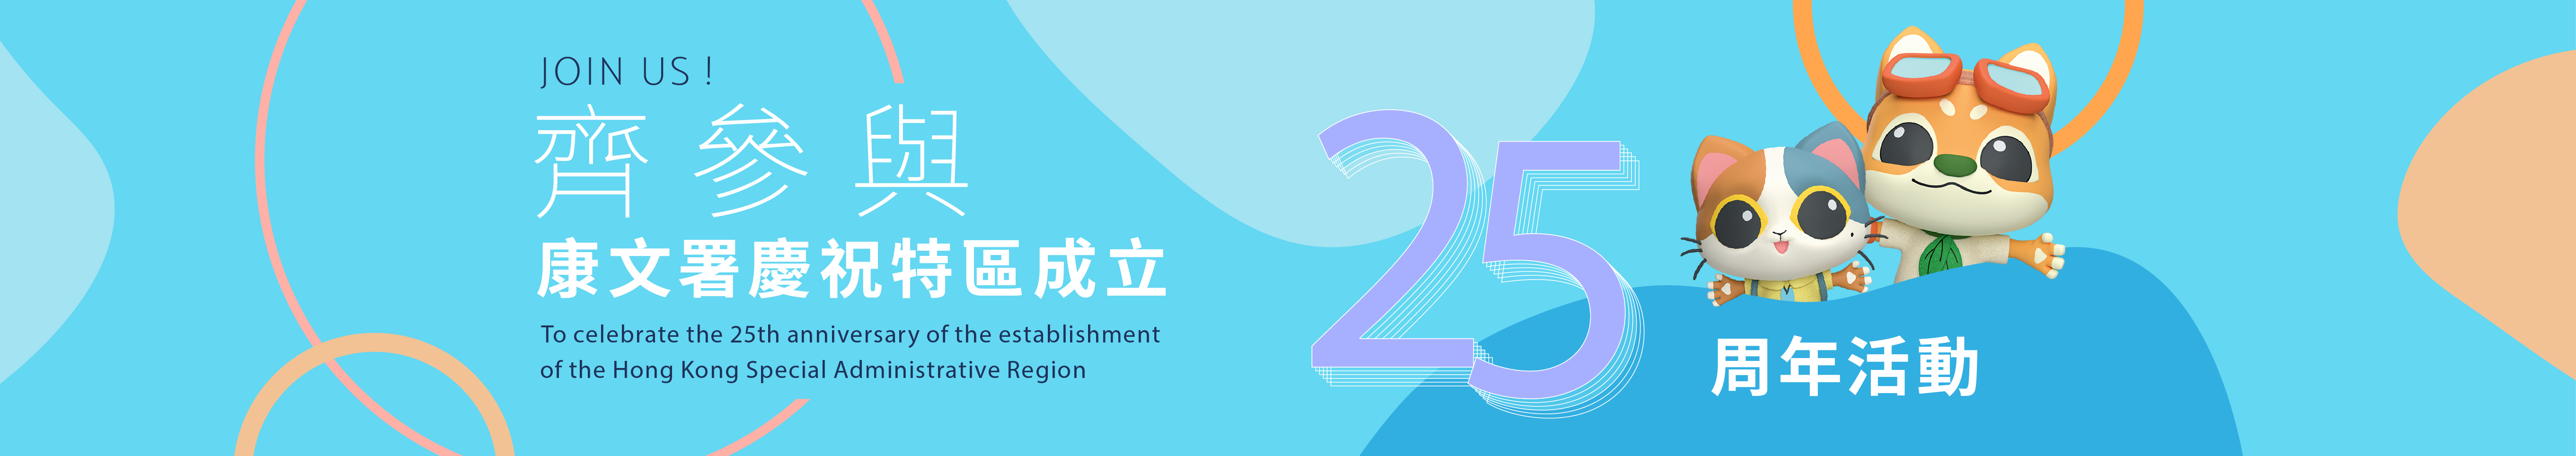 康文署慶祝香港特區成立25周年活動